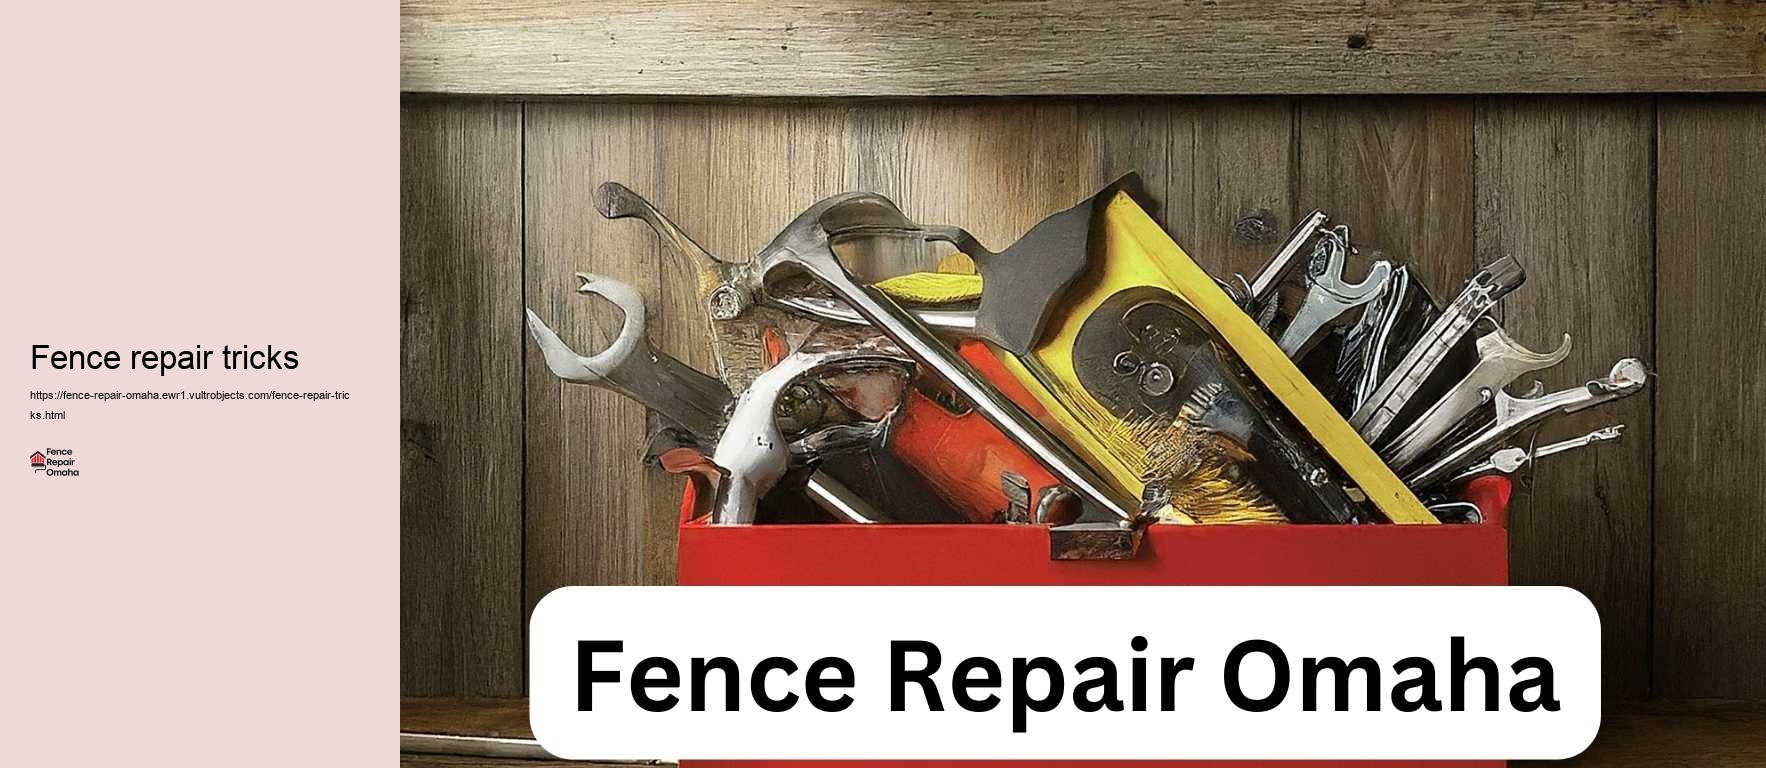 Fence repair tricks